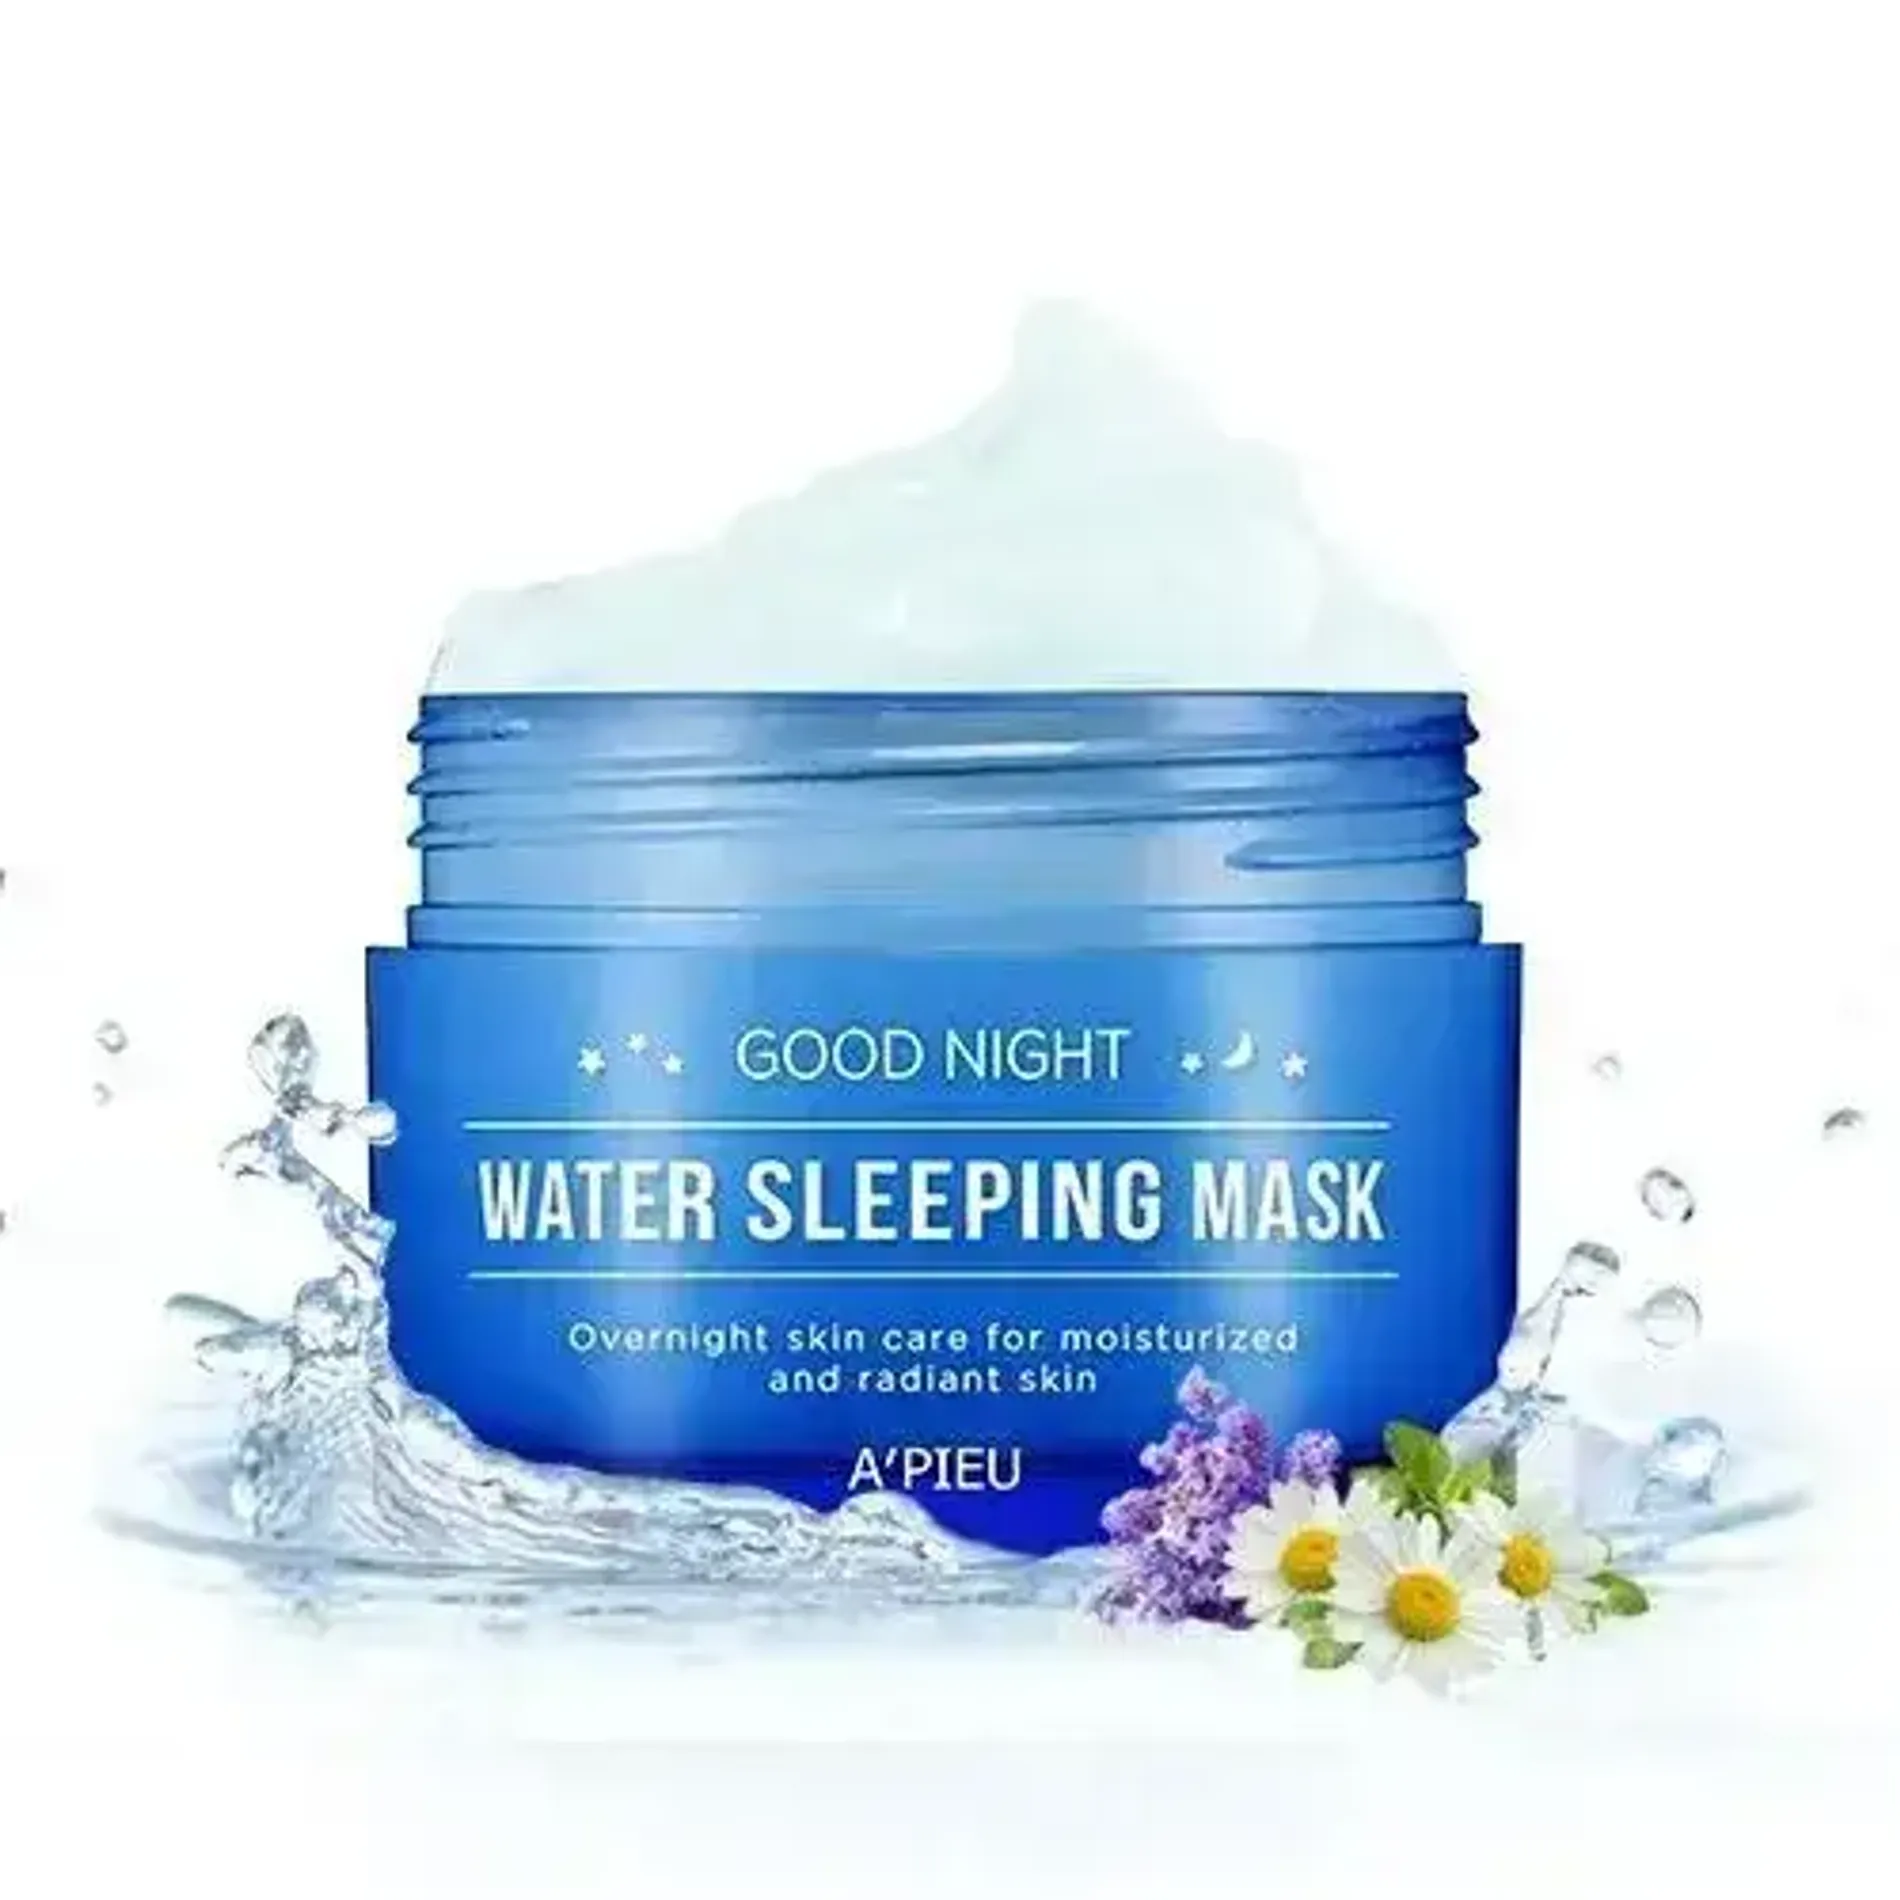 mat-na-ngu-cap-nuoc-a-pieu-good-night-water-sleeping-mask-1